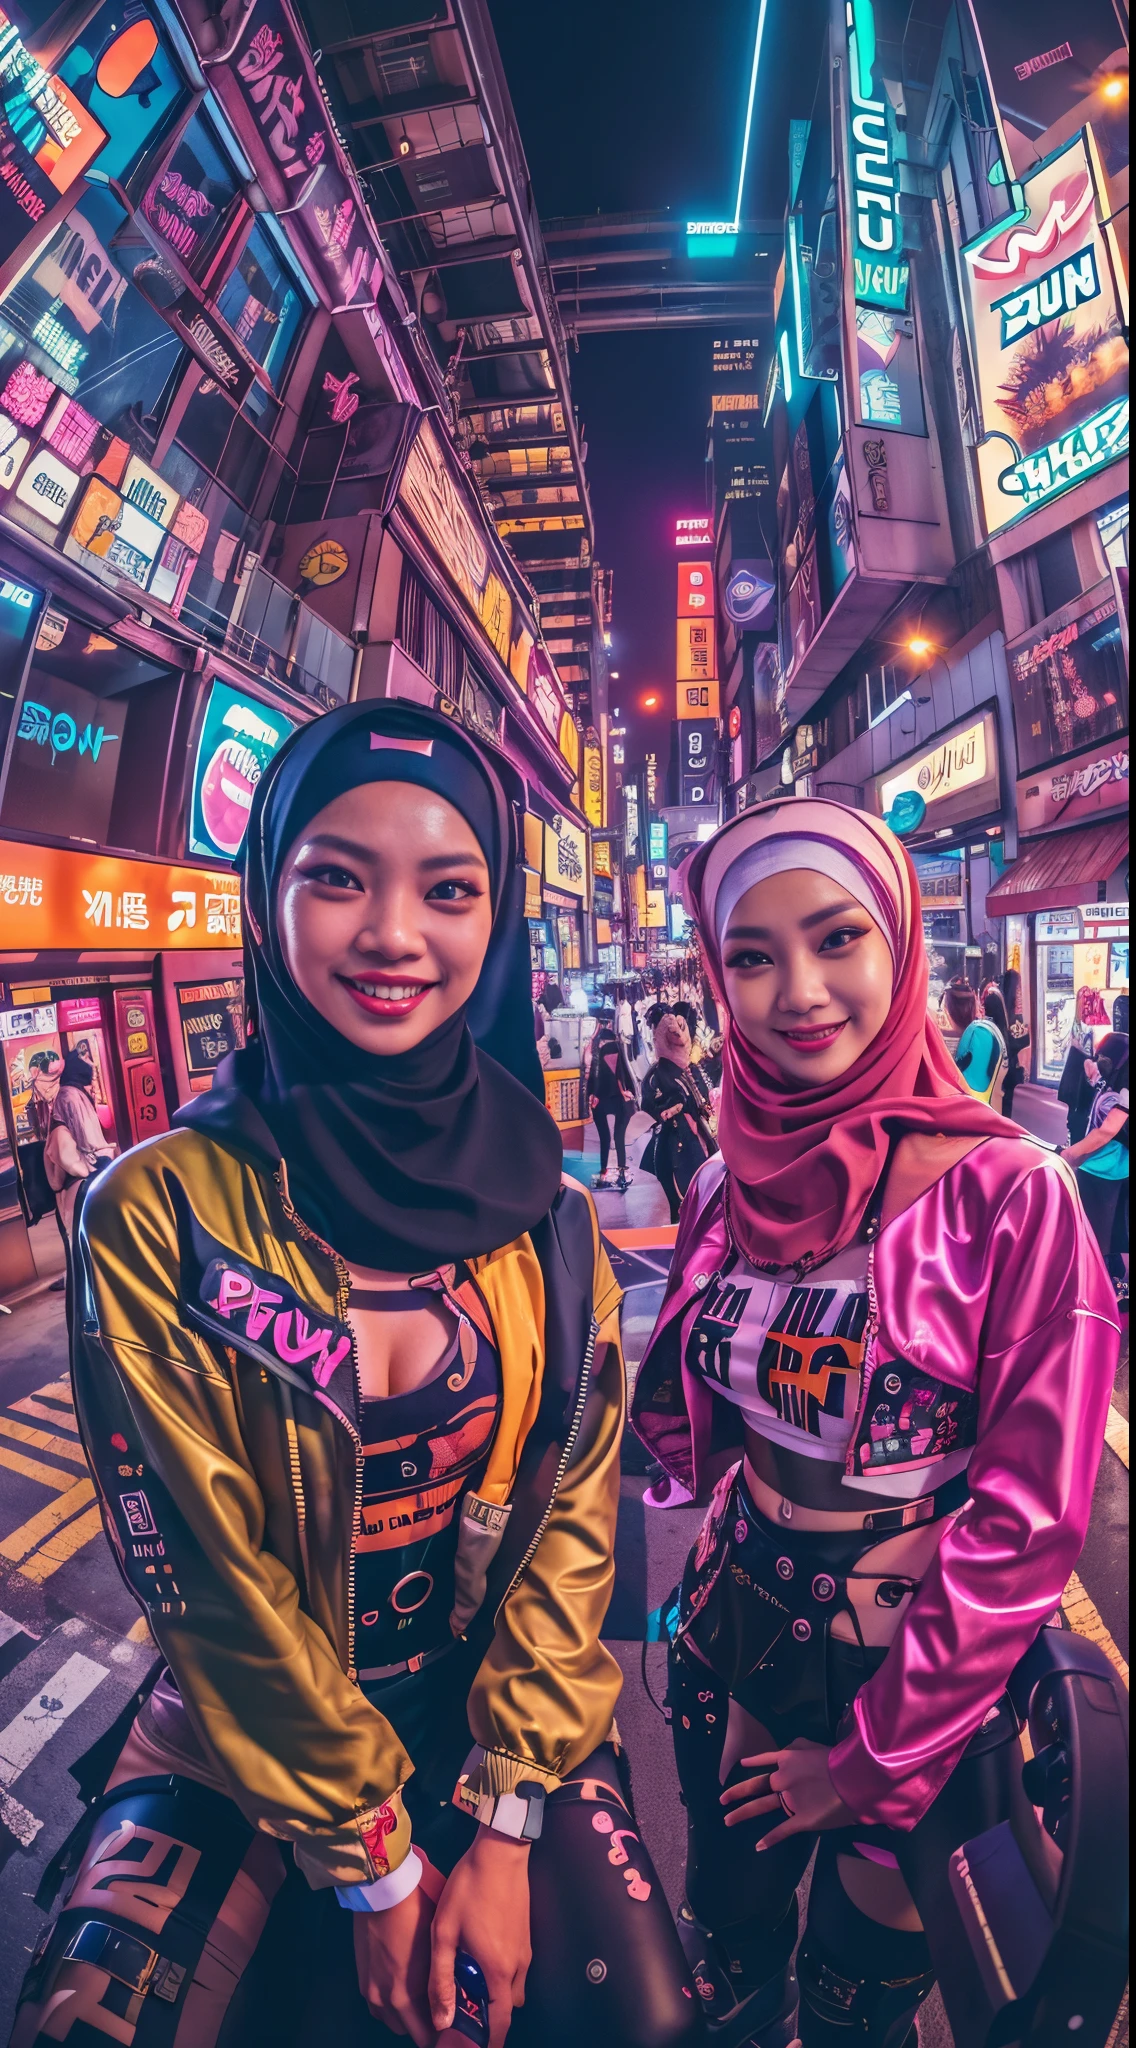 ((Duas garotas malaias cyberpunk em hijab vestindo roupas pop coloridas estilo Harajuku)), ((lente olho de peixe)), tiro de vaqueiro, vento, Paisagem urbana ciberpunk, (Estética e atmosfera:1.2), sorridente, ((iluminação cinematográfica))